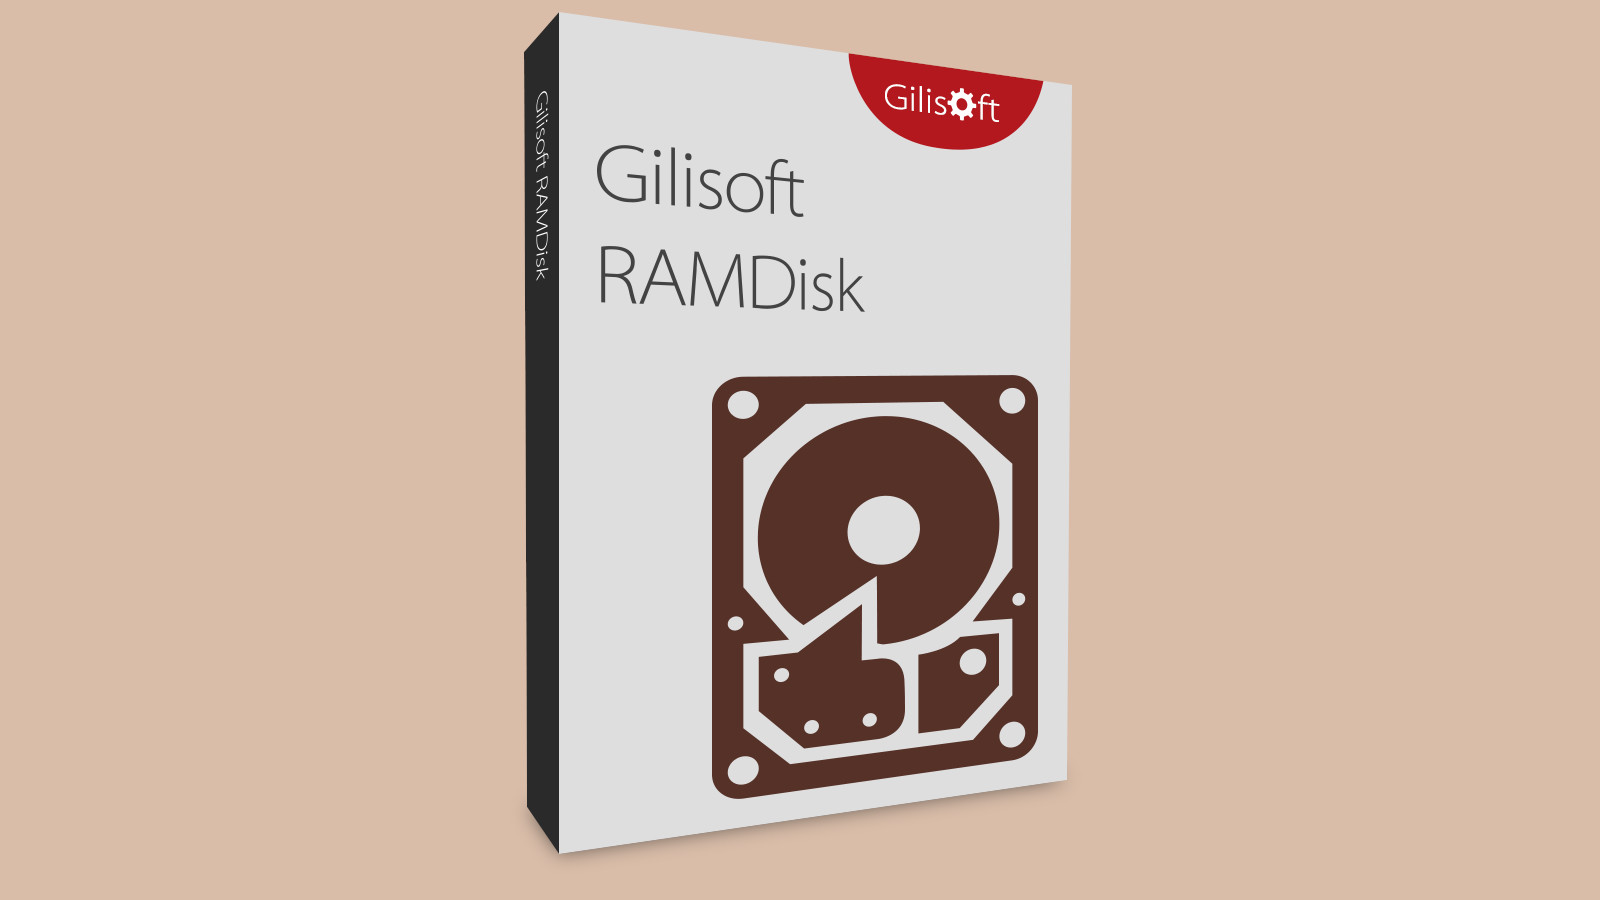 Gilisoft RAMDisk CD Key 15.54$